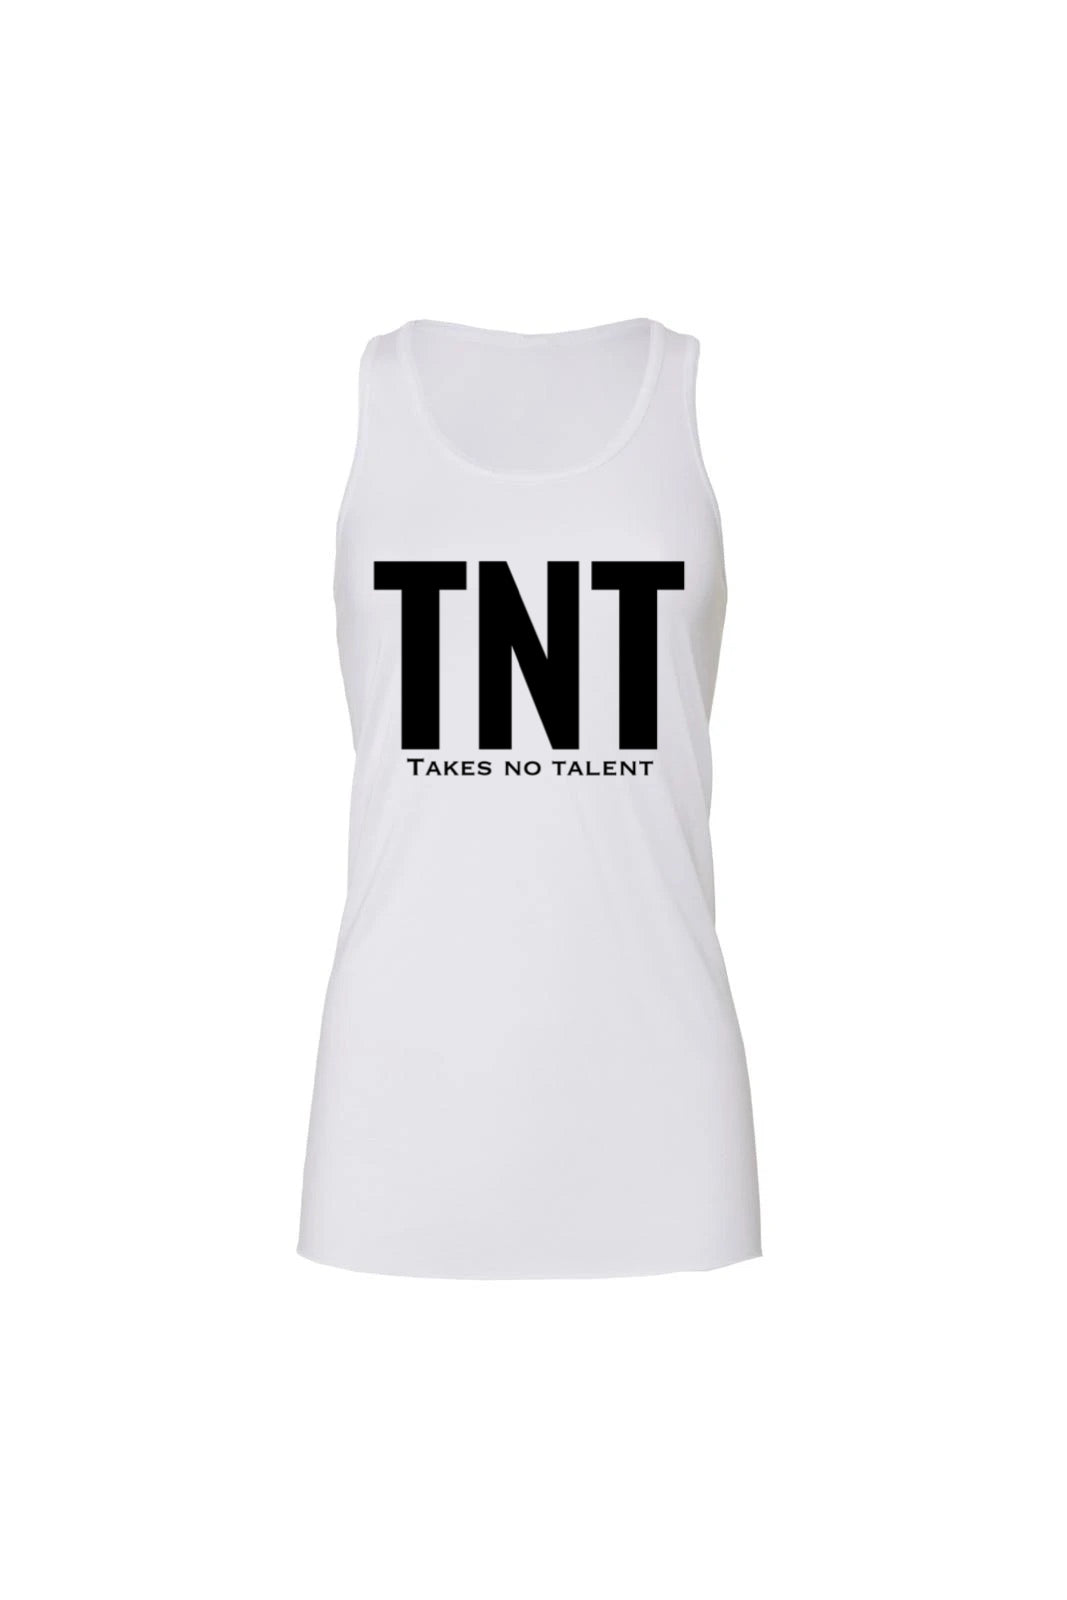 Project 100 “TNT” Flowy Full Length Tank